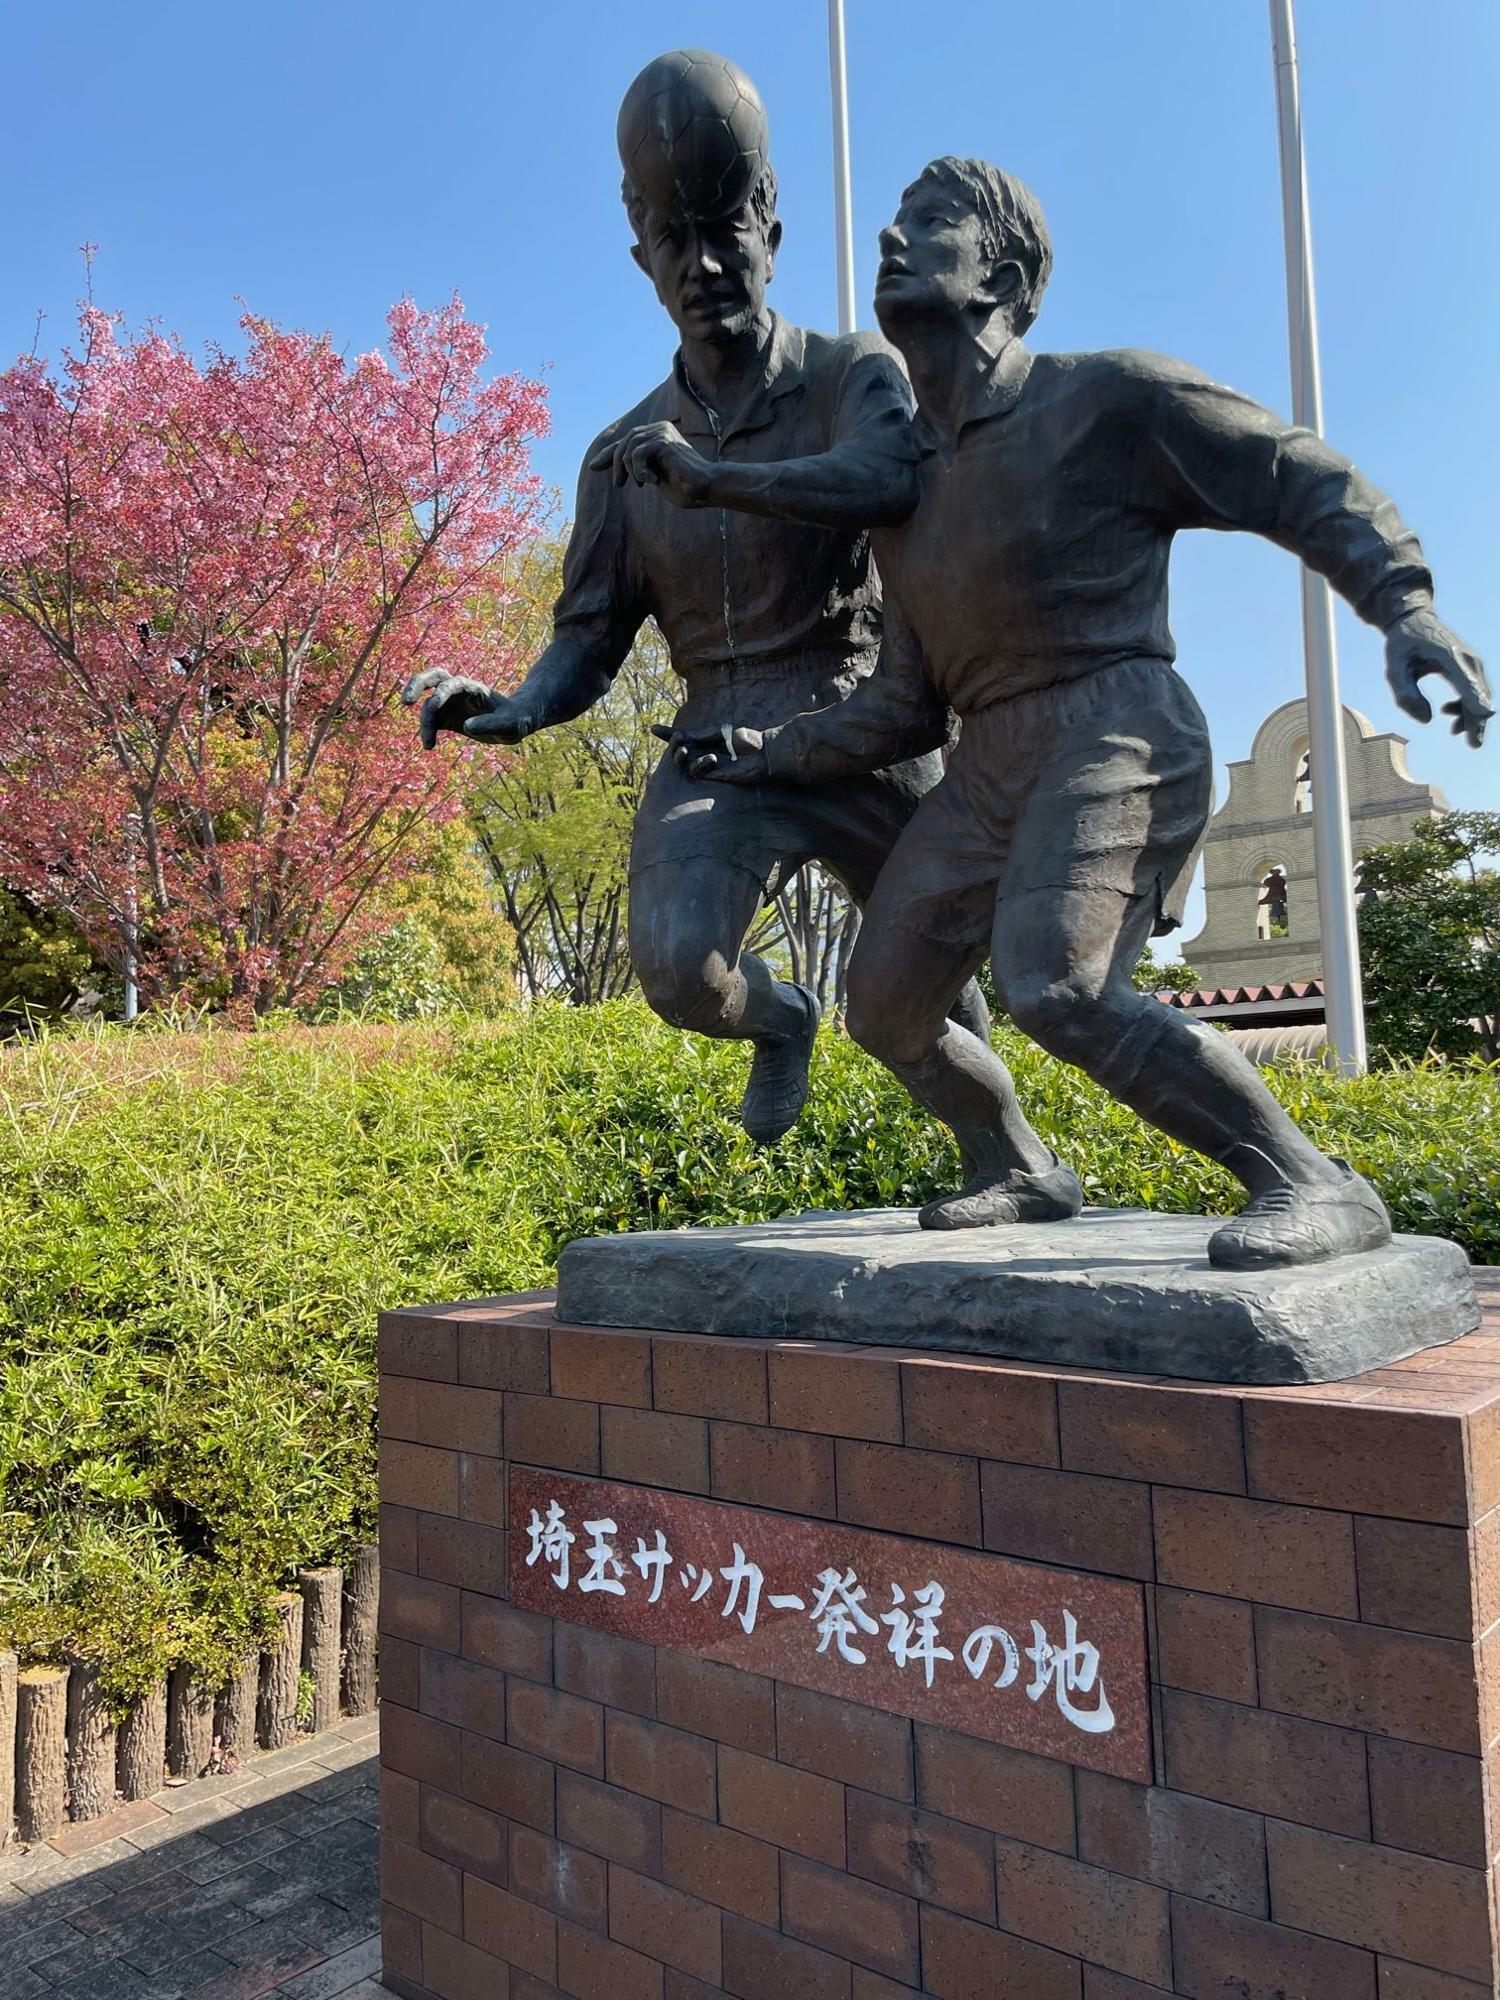 さいたま市役所にある「埼玉サッカー発祥の地の像」